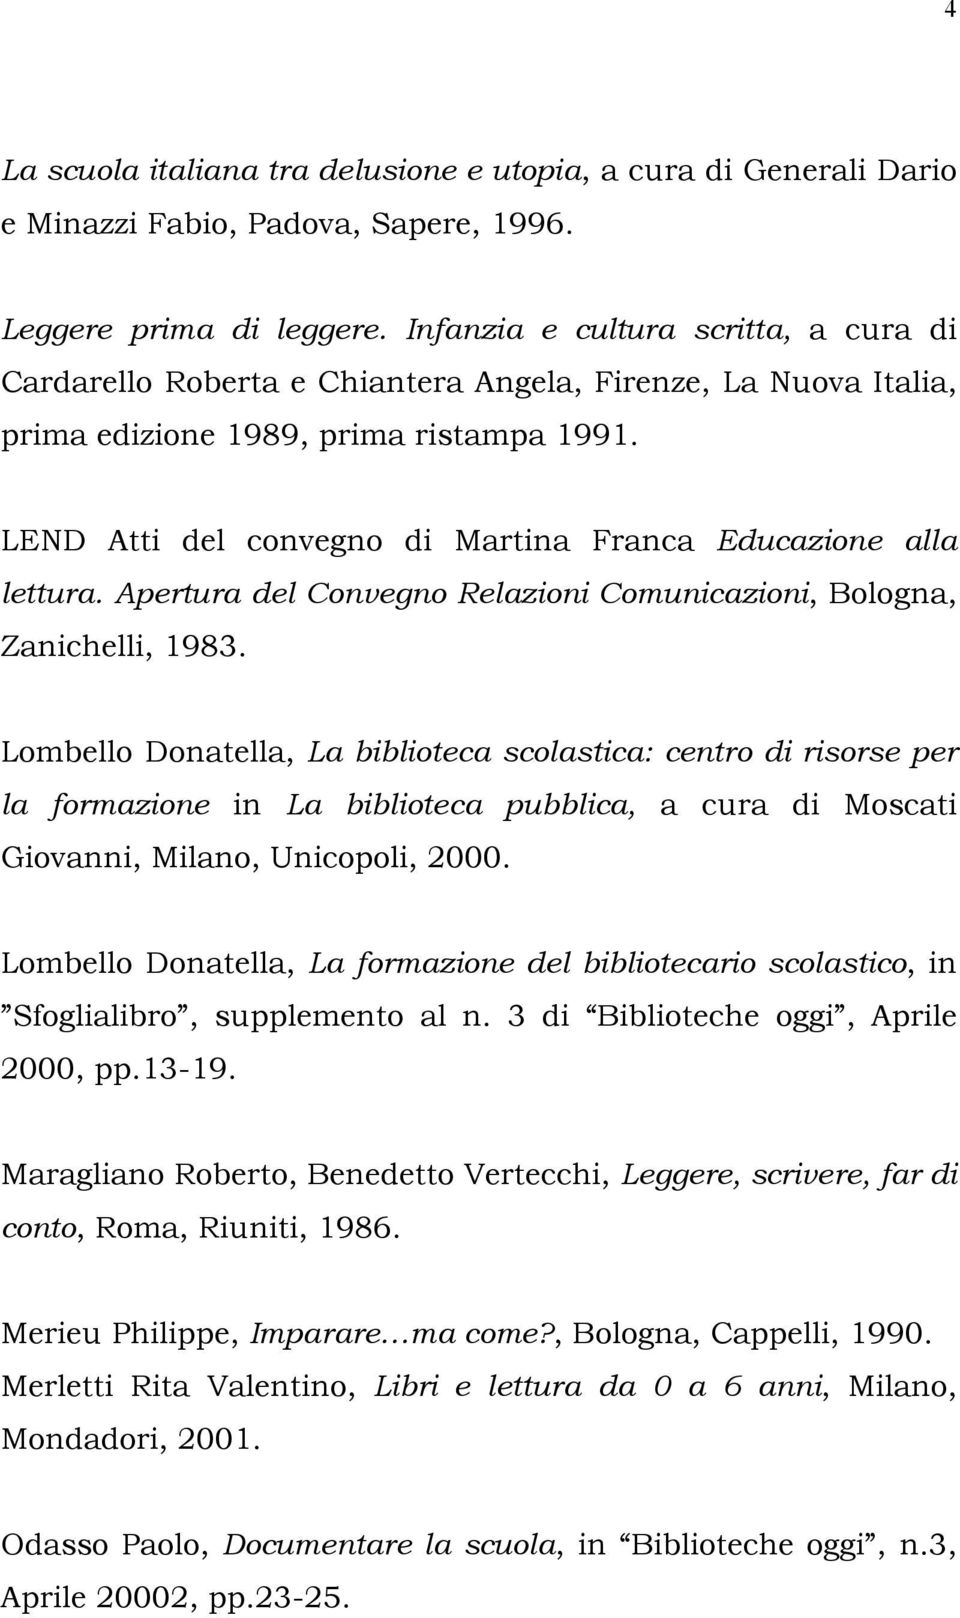 LEND Atti del convegno di Martina Franca Educazione alla lettura. Apertura del Convegno Relazioni Comunicazioni, Bologna, Zanichelli, 1983.